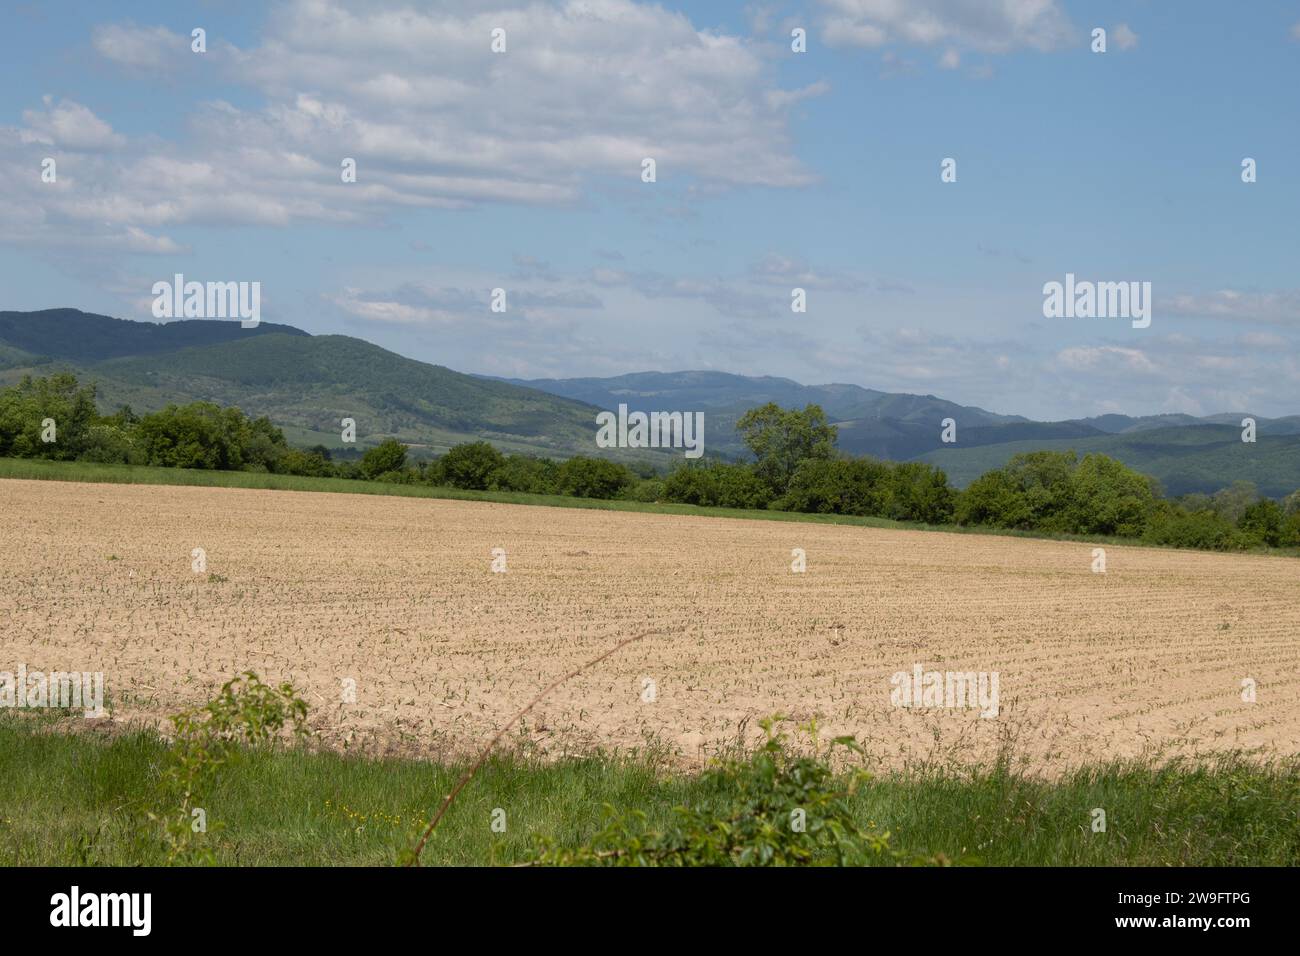 The Carpathian Mountains, Romania Stock Photo